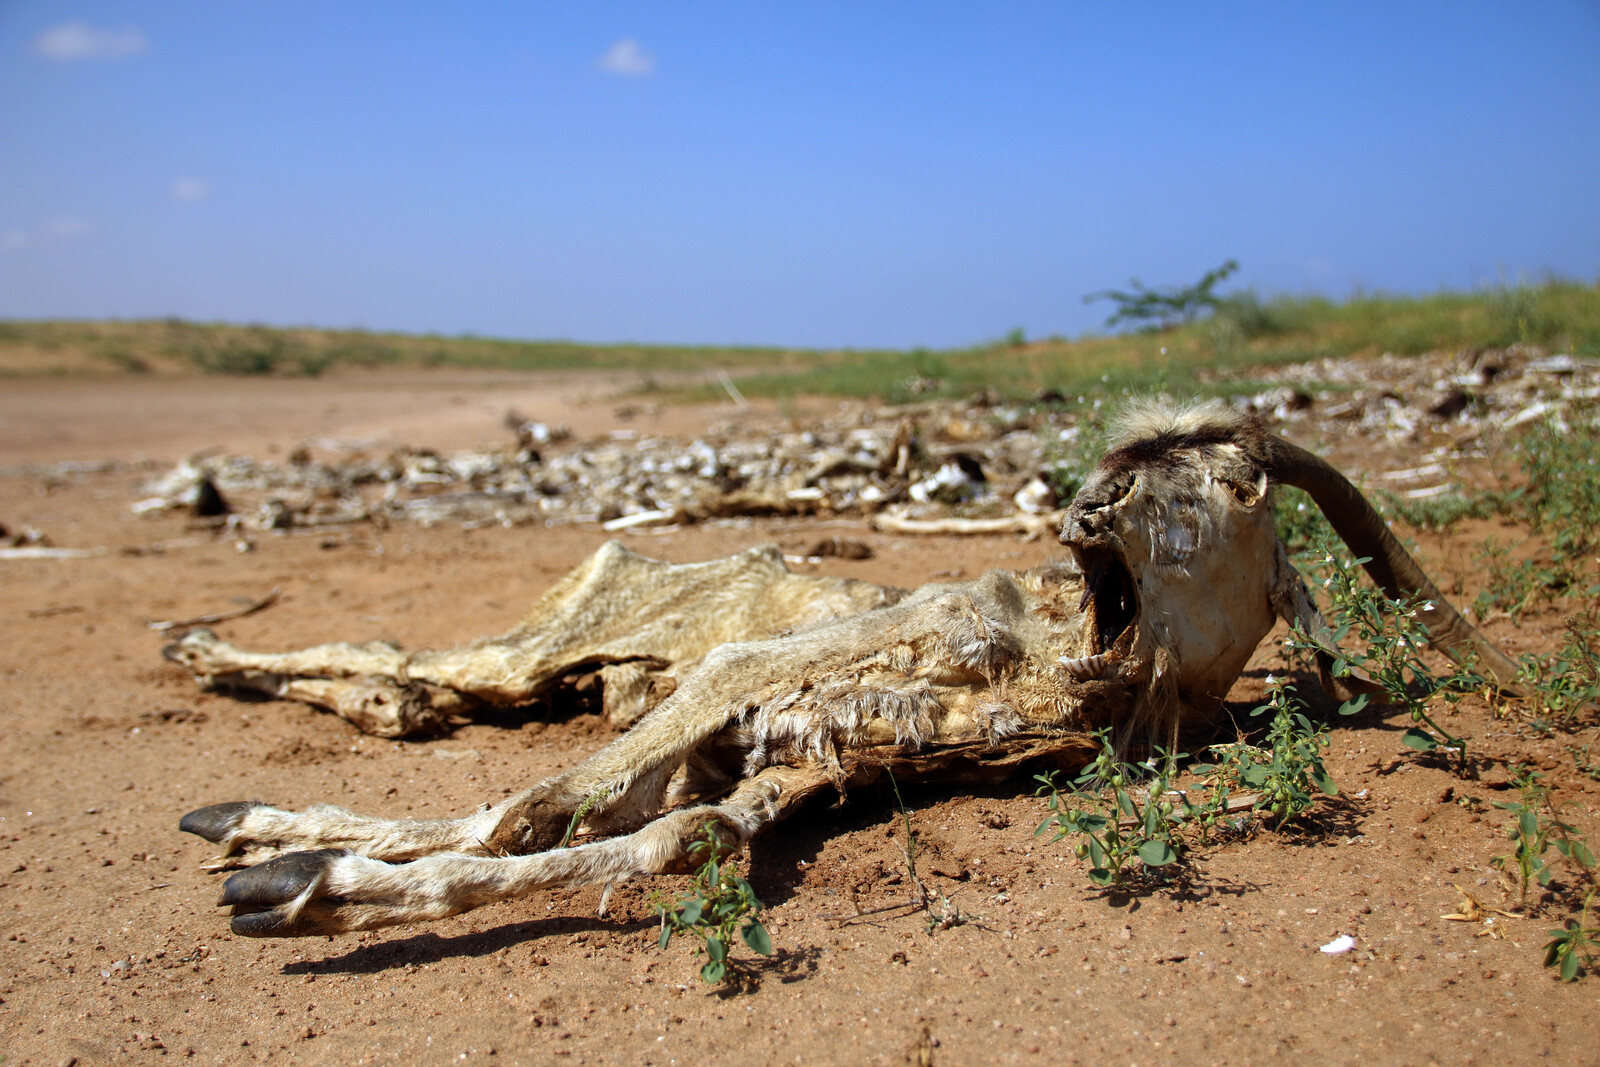 Kenia Somalia Ziege tot Dürre Wüste